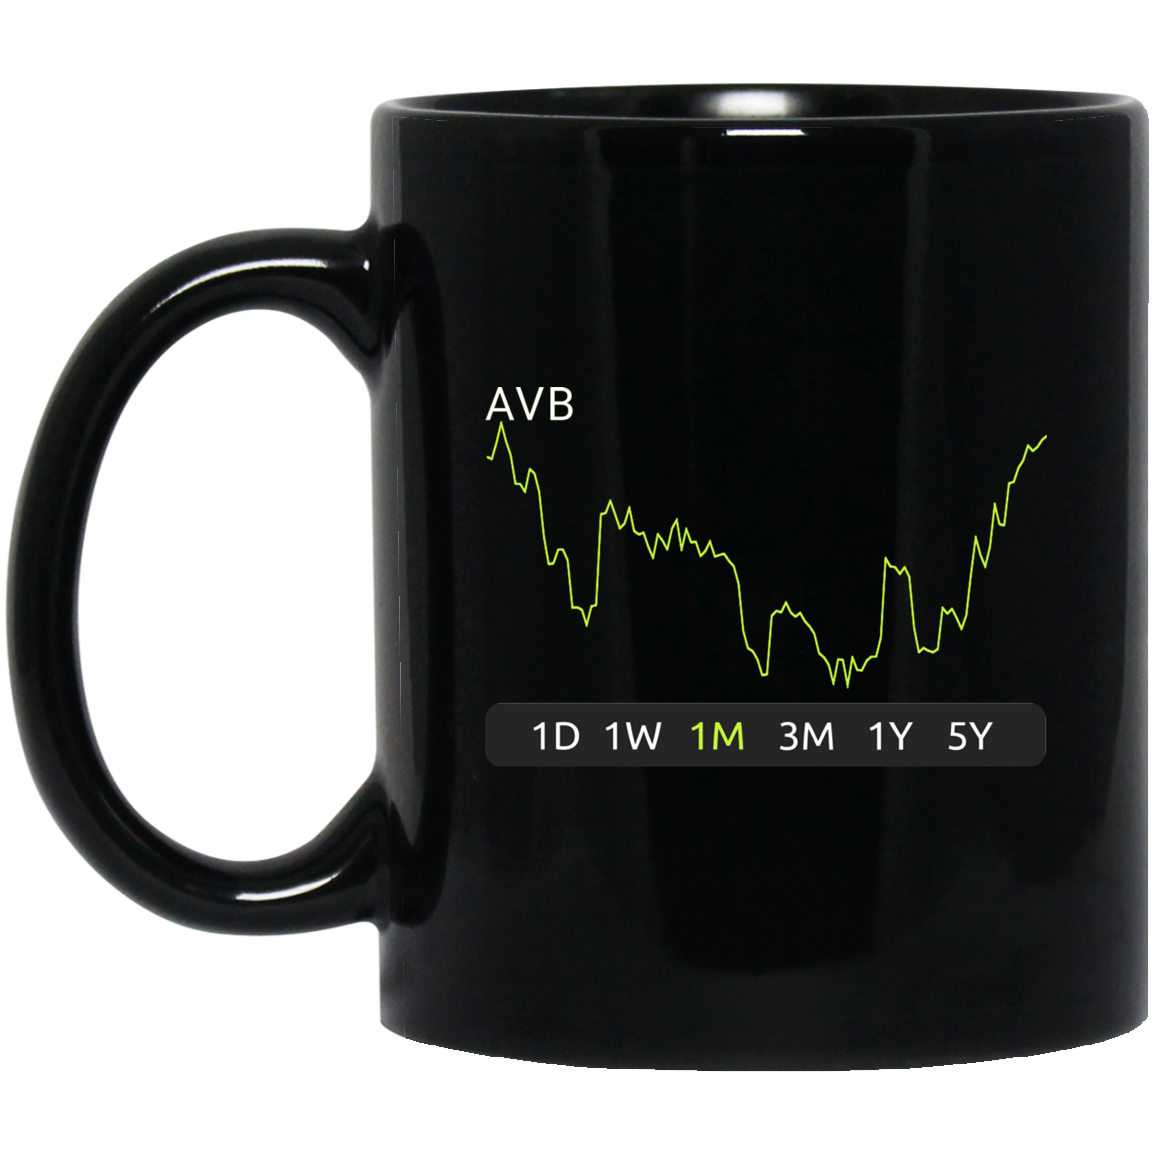 AVB Stock 1m Mug